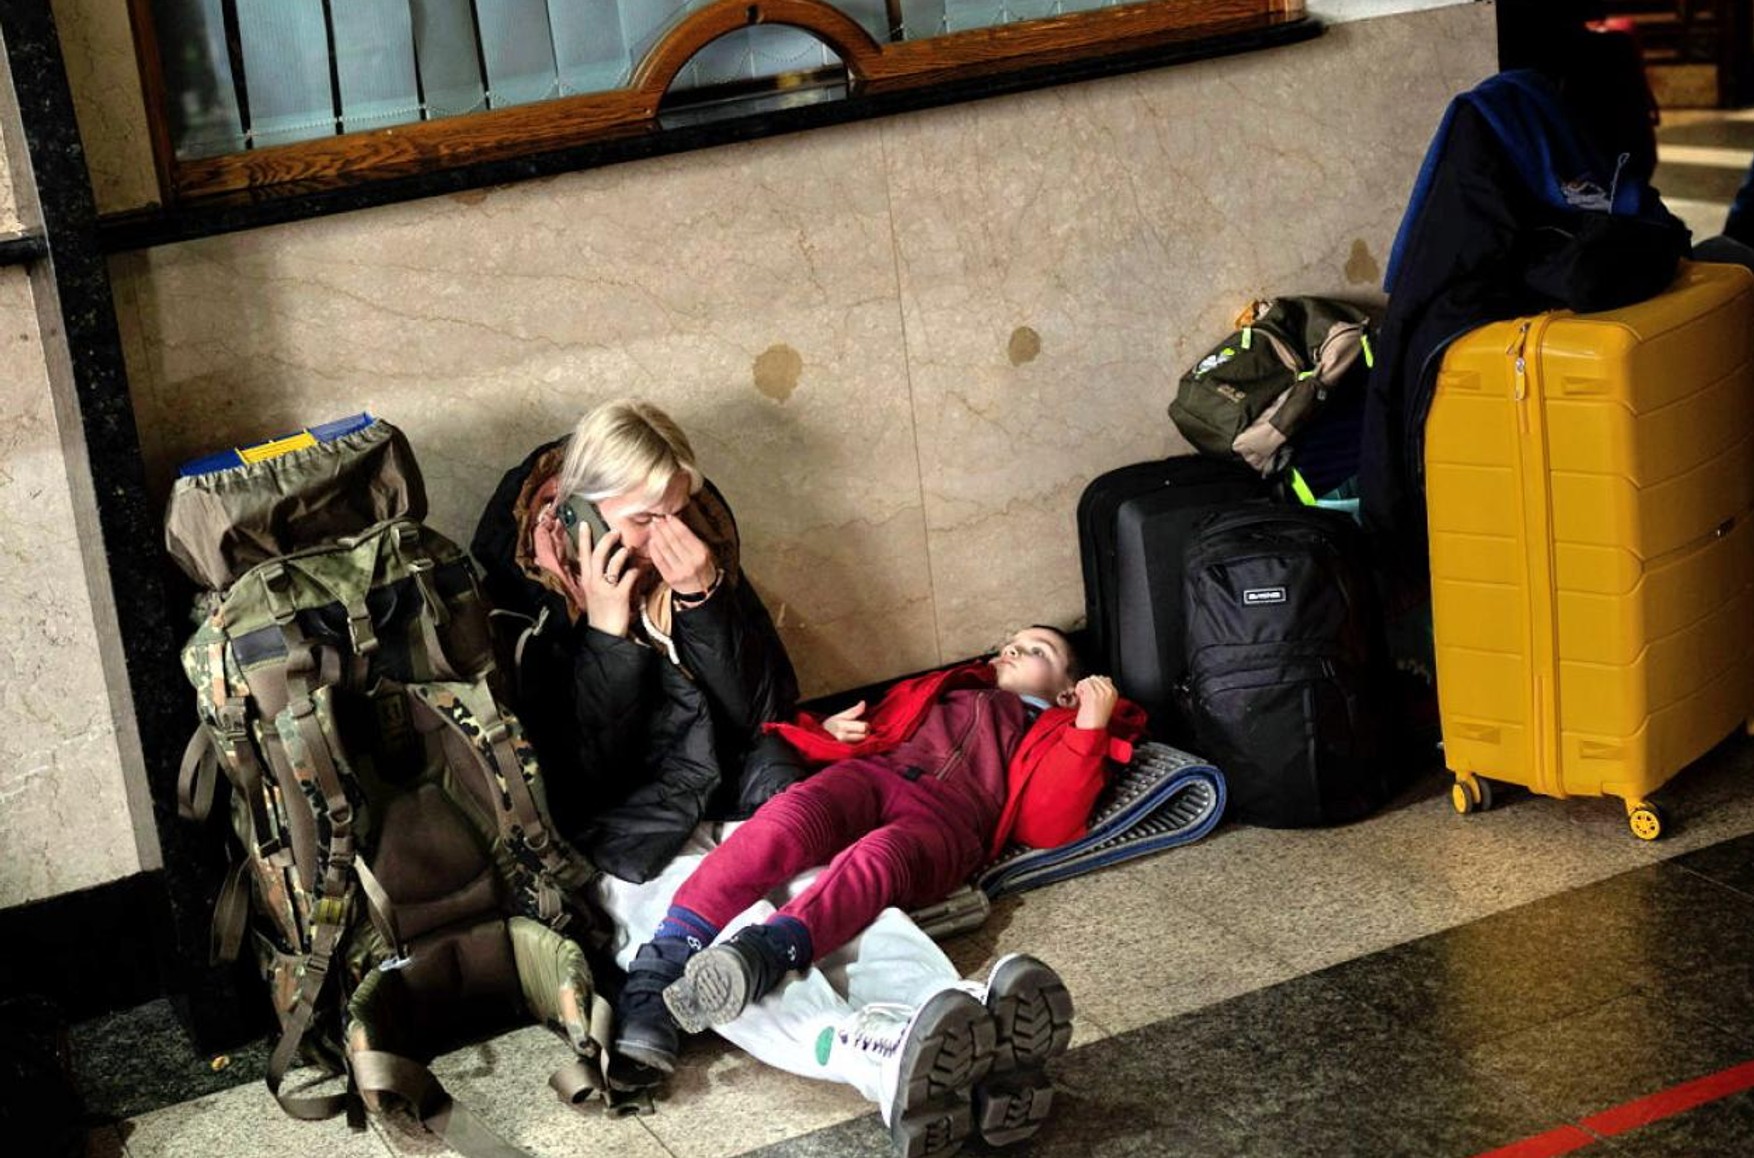 ООН: больше половины украинских детей покинули свои дома из-за войны. Это крупнейшая эвакуация детей со времен Второй мировой войны